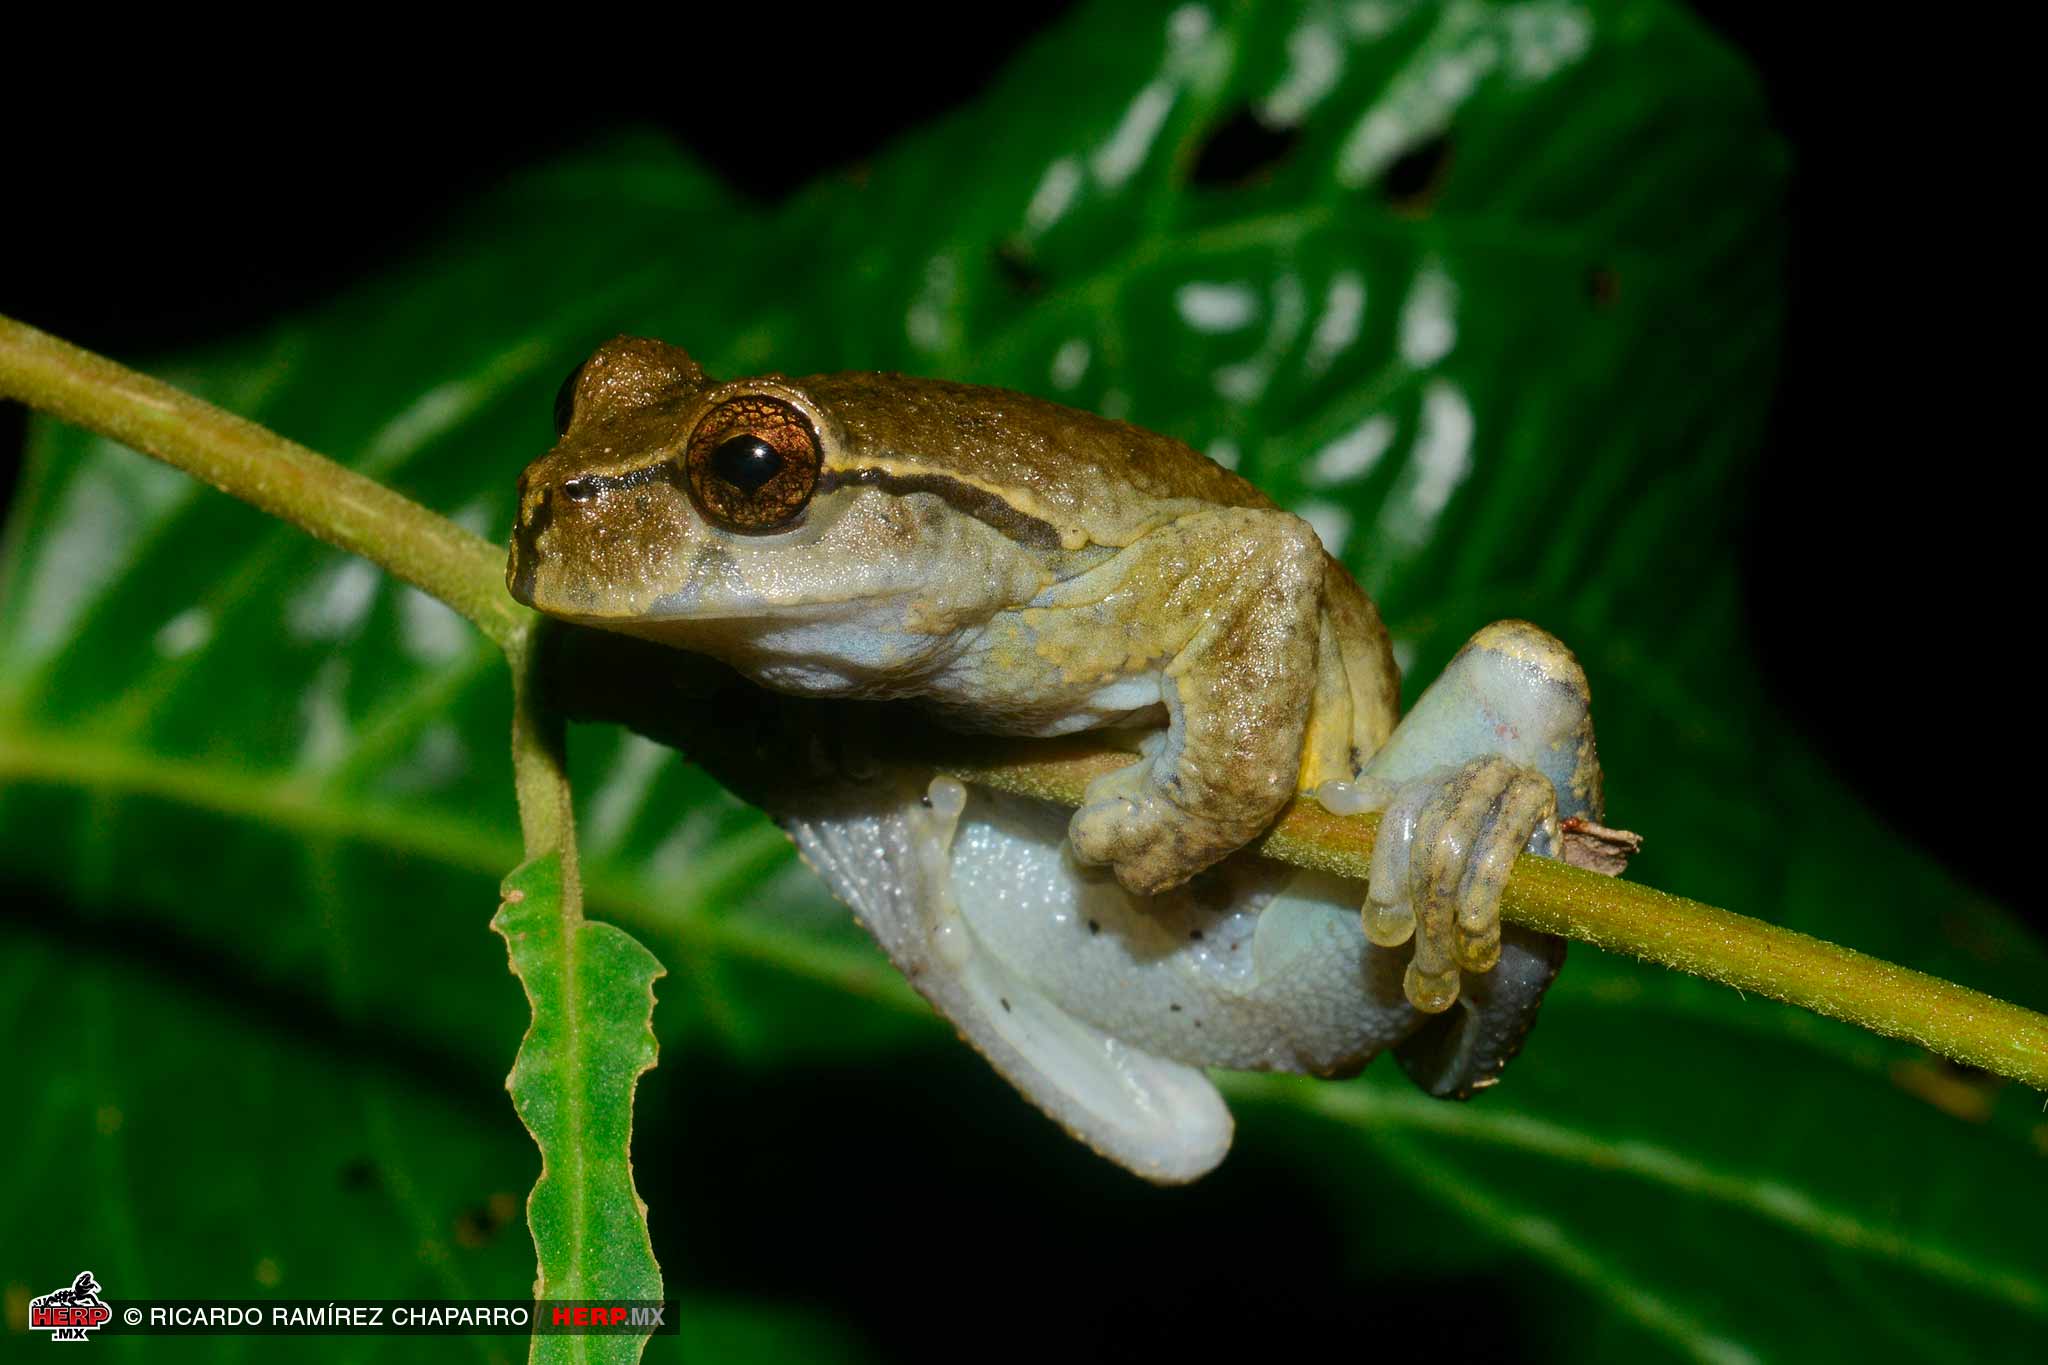 Ixil Spikethumb Frog (<em>Plectrohyla ixil</em>)<br />© Ricardo Ramírez Chaparro / HERP.MX